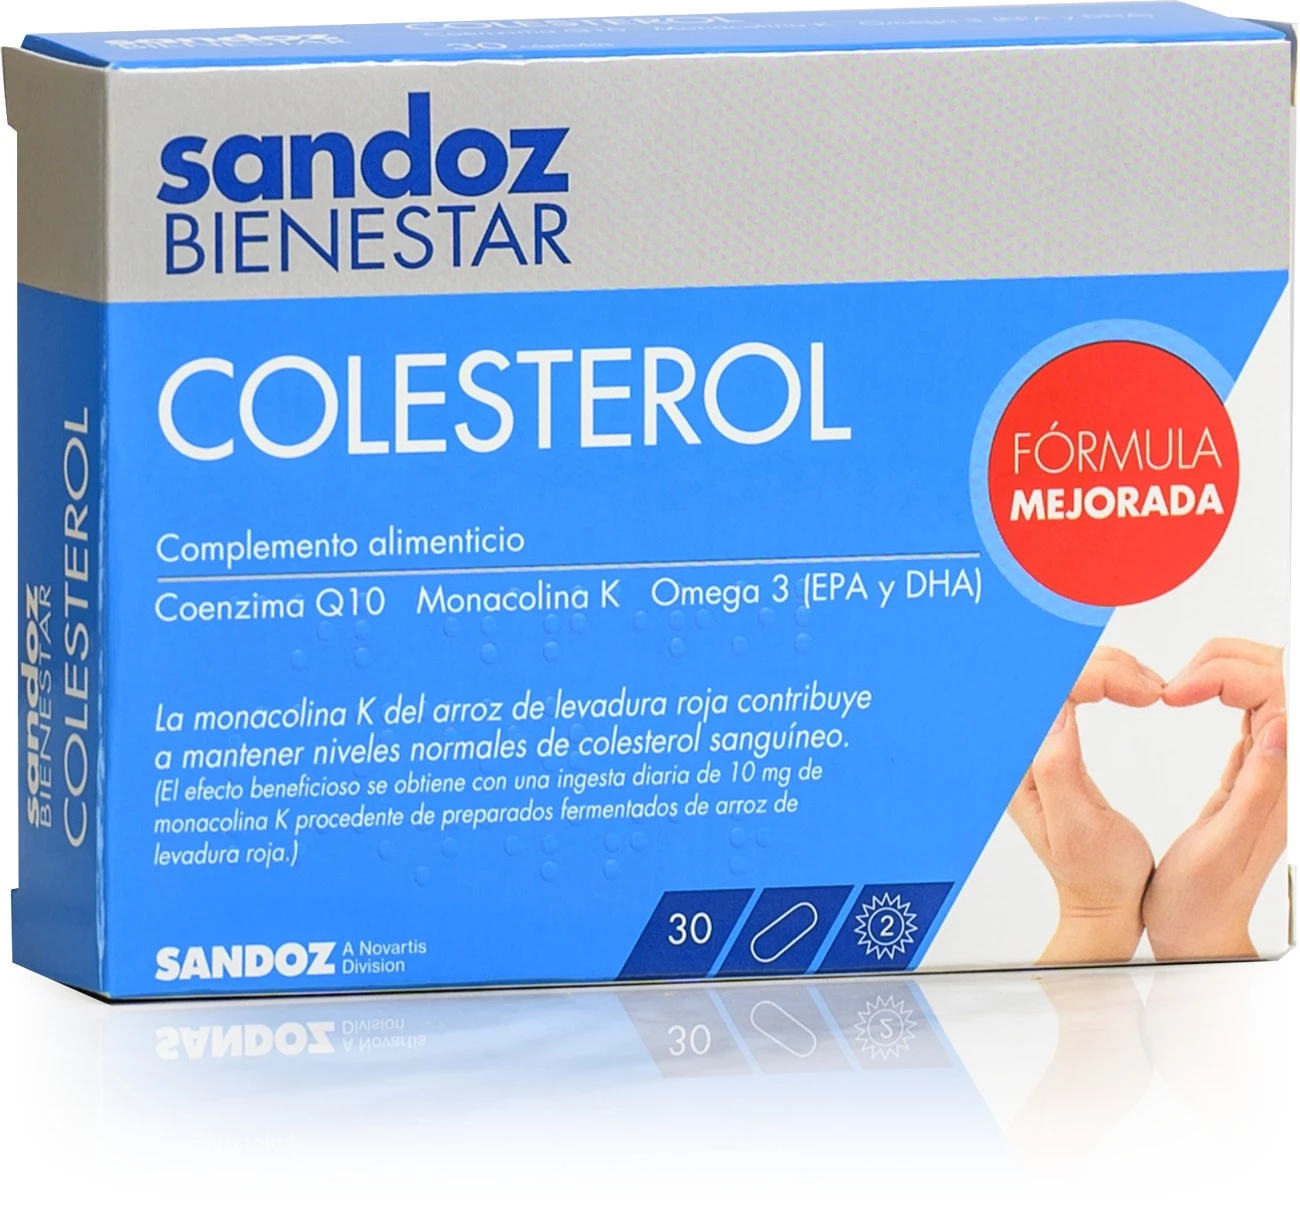 Sandoz Bienestar Colesterol, 30 Cápsulas